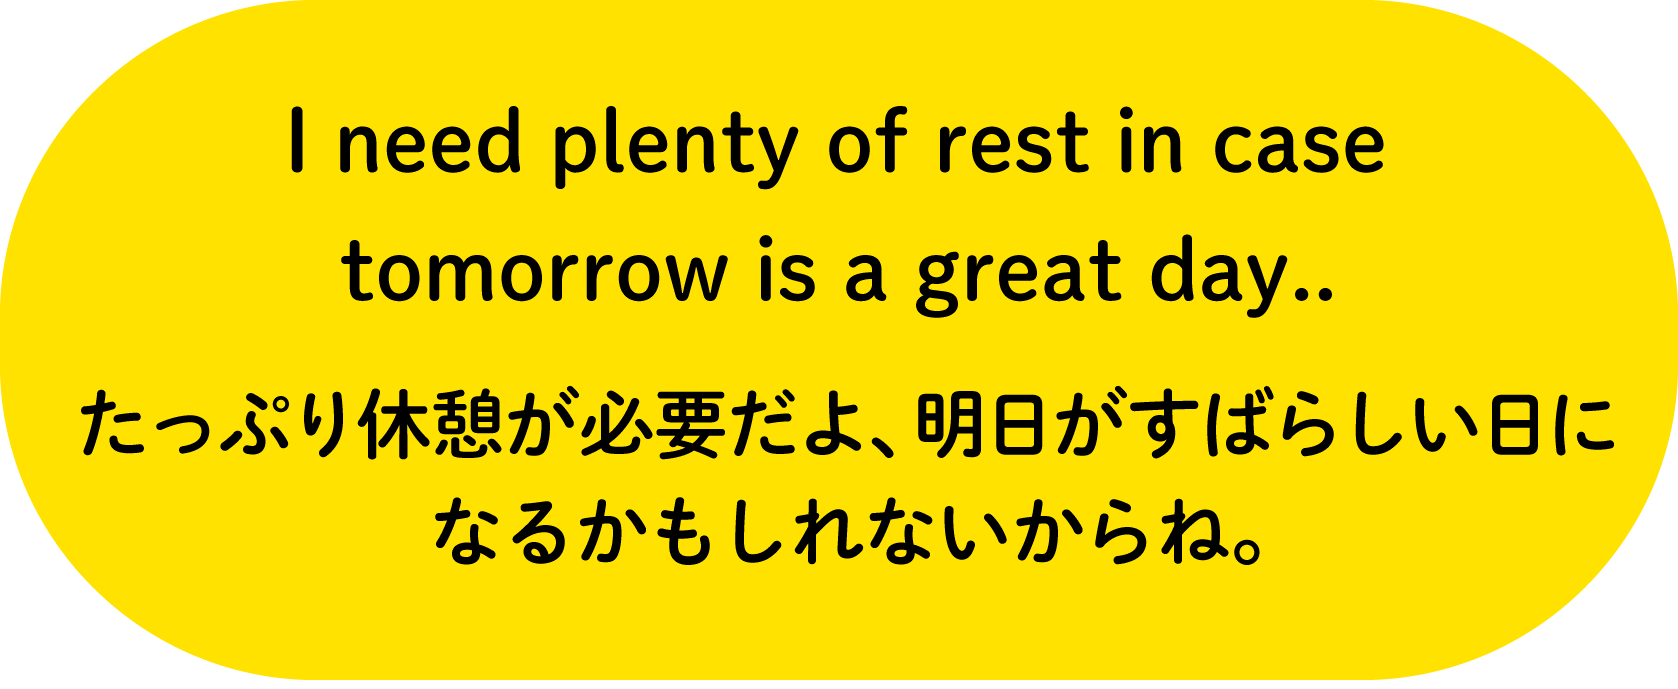 I need plenty of rest in case tomorrow is a great day..たっぷり休憩が必要だよ、明日がすばらしい日になるかもしれないからね。